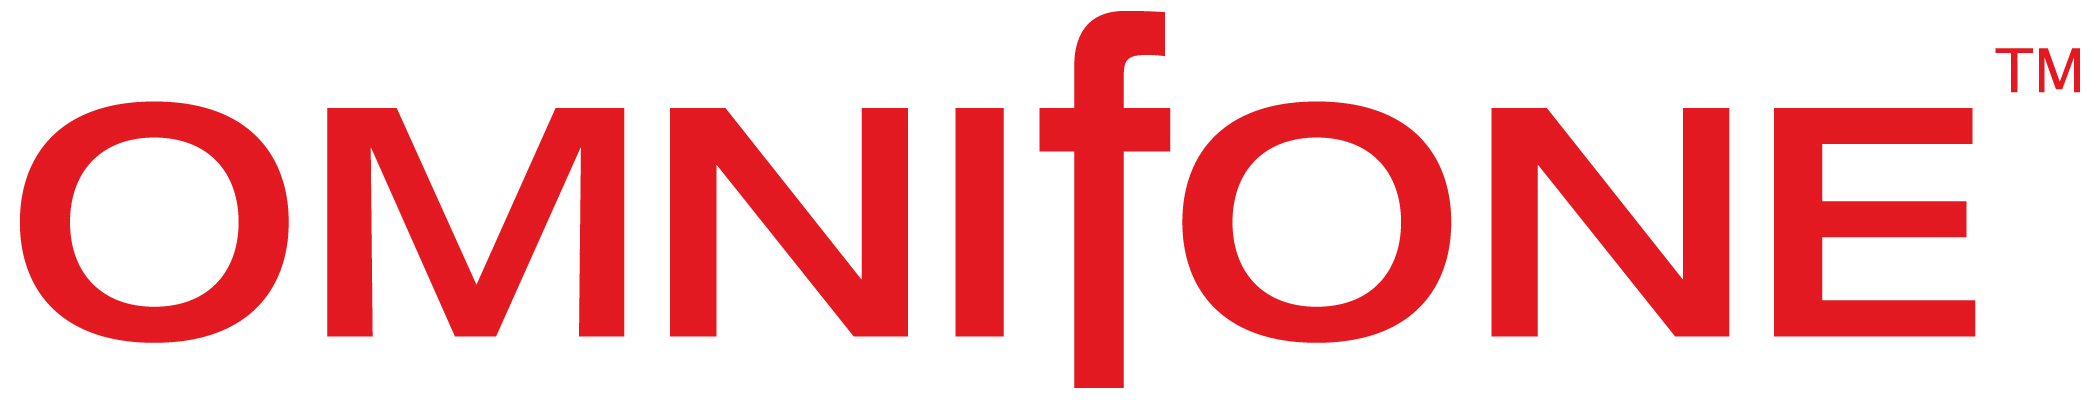 omnifone_logo.jpg